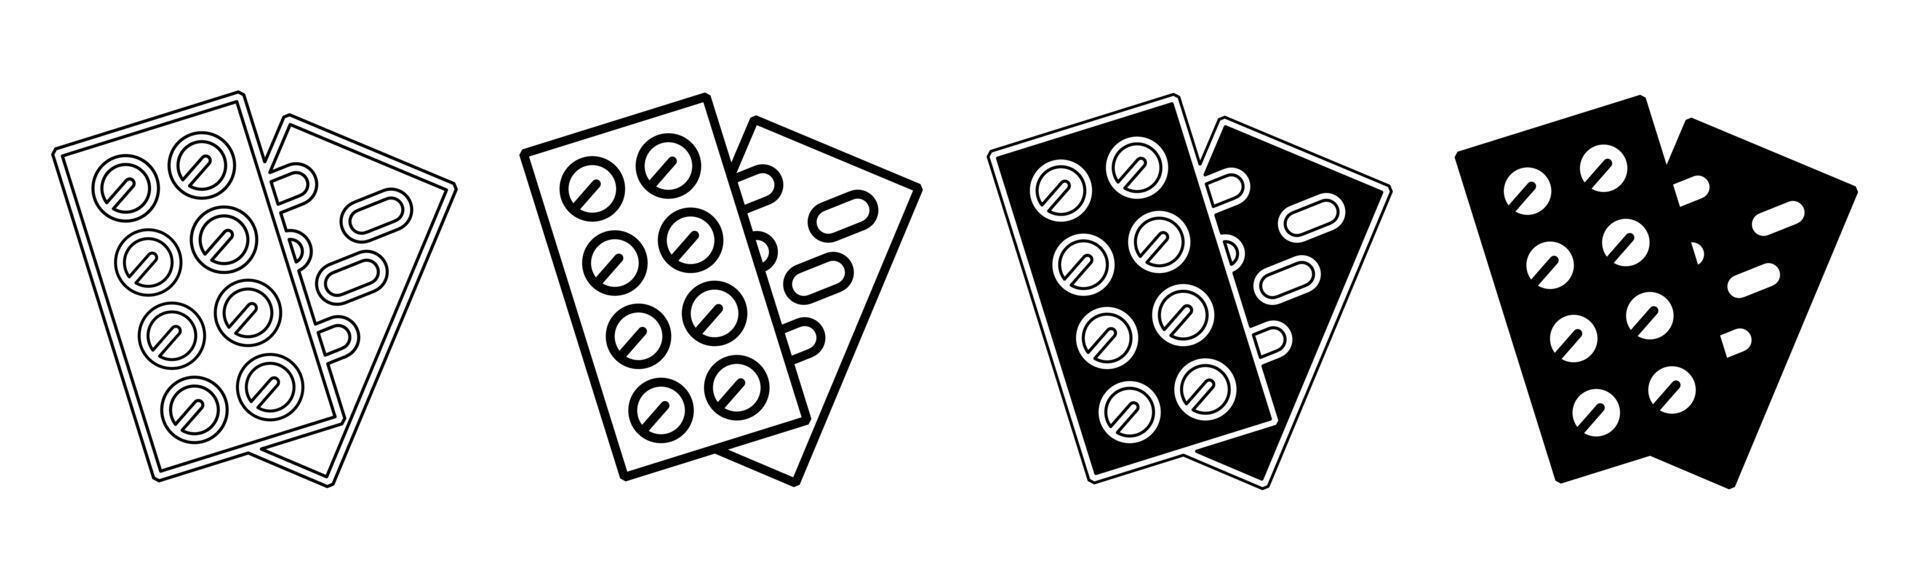 svart och vit illustration av en läkemedel kapsel. kapsel , läkemedel ikon samling med linje. stock vektor illustration.